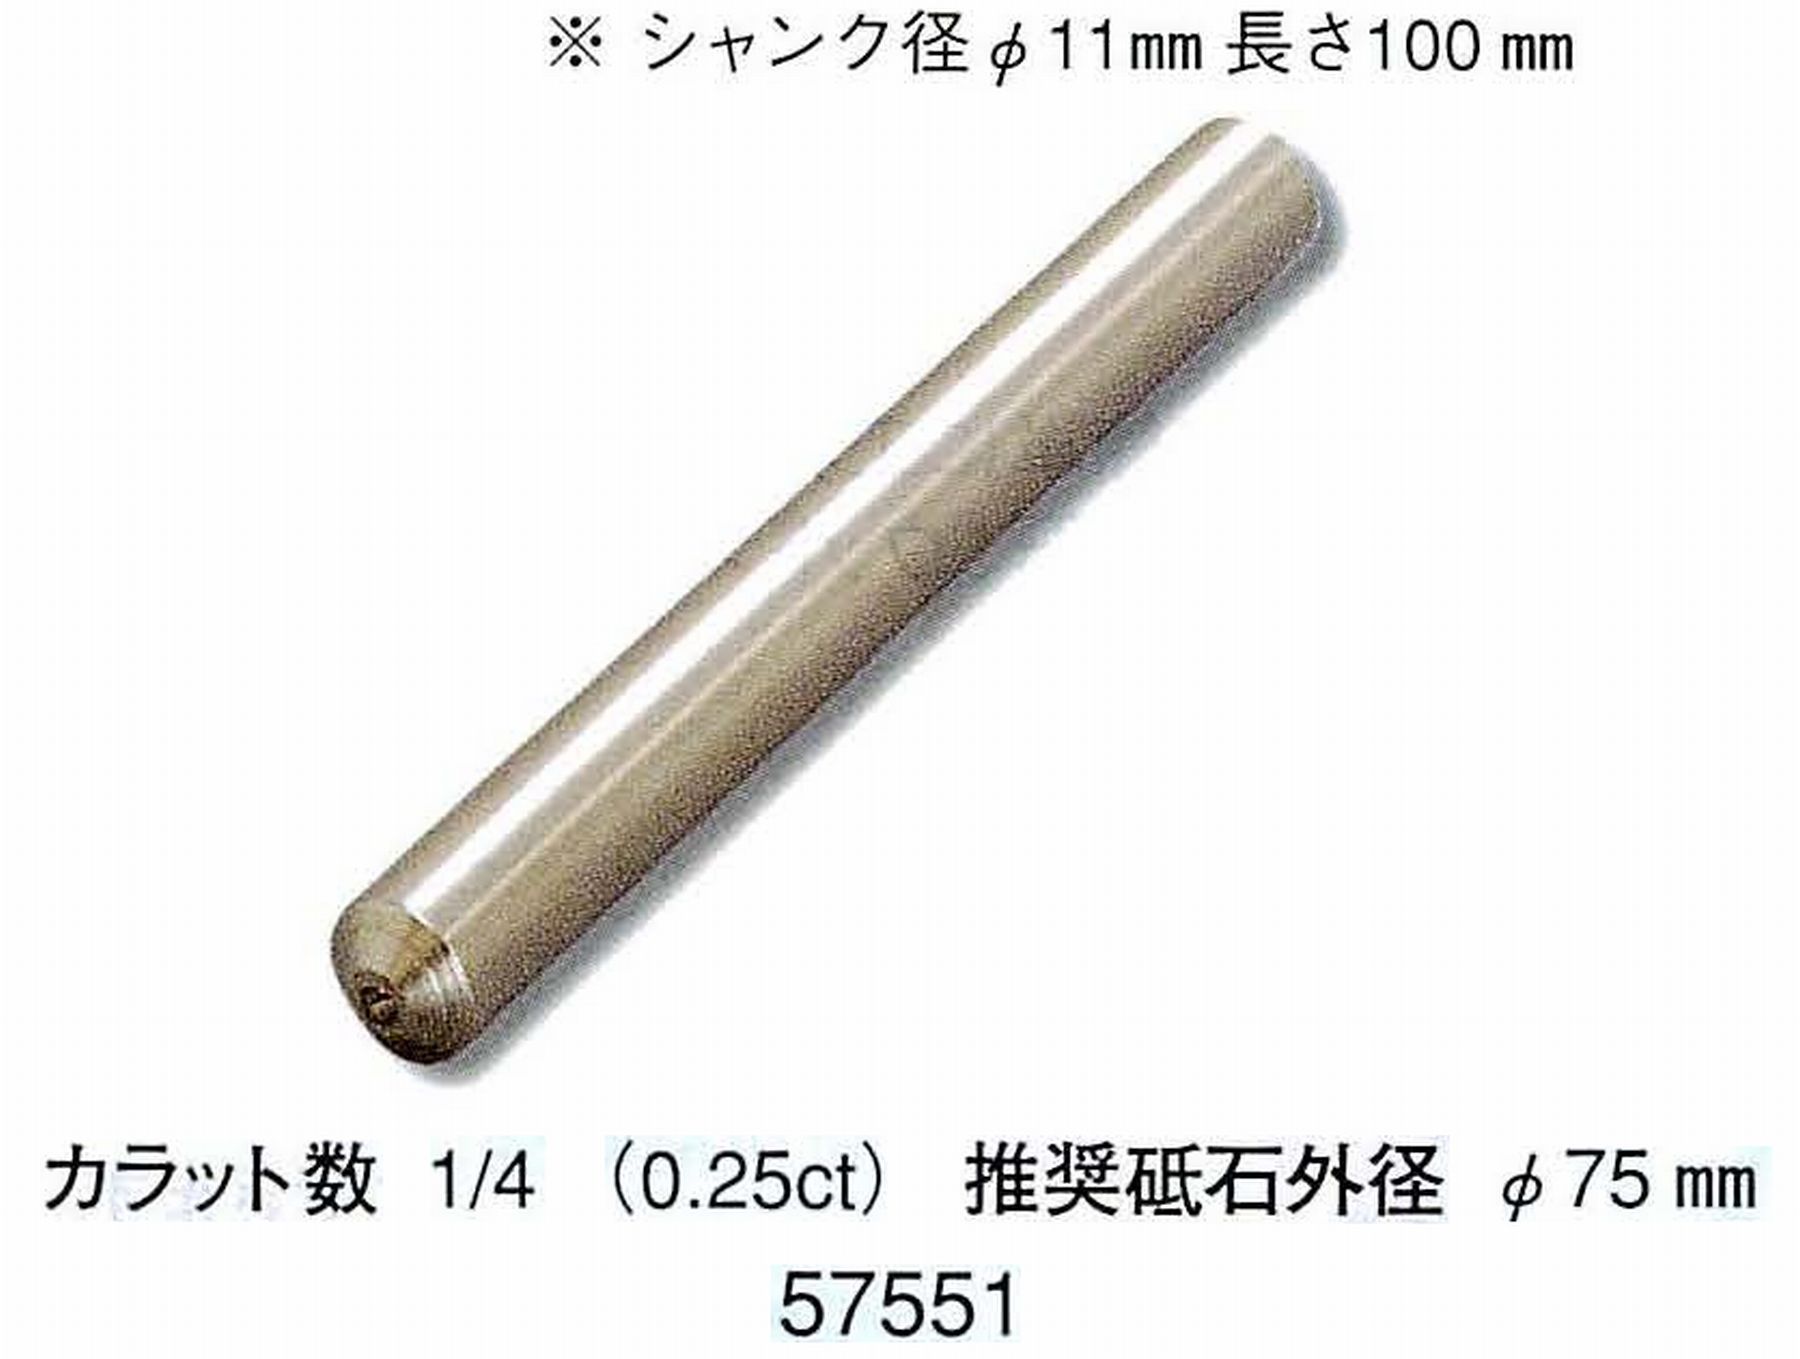 ナカニシ/NAKANISHI 天然ダイヤモンド 単石ドレッサ(シャンク径φ11mm 長さ100mm) 57551